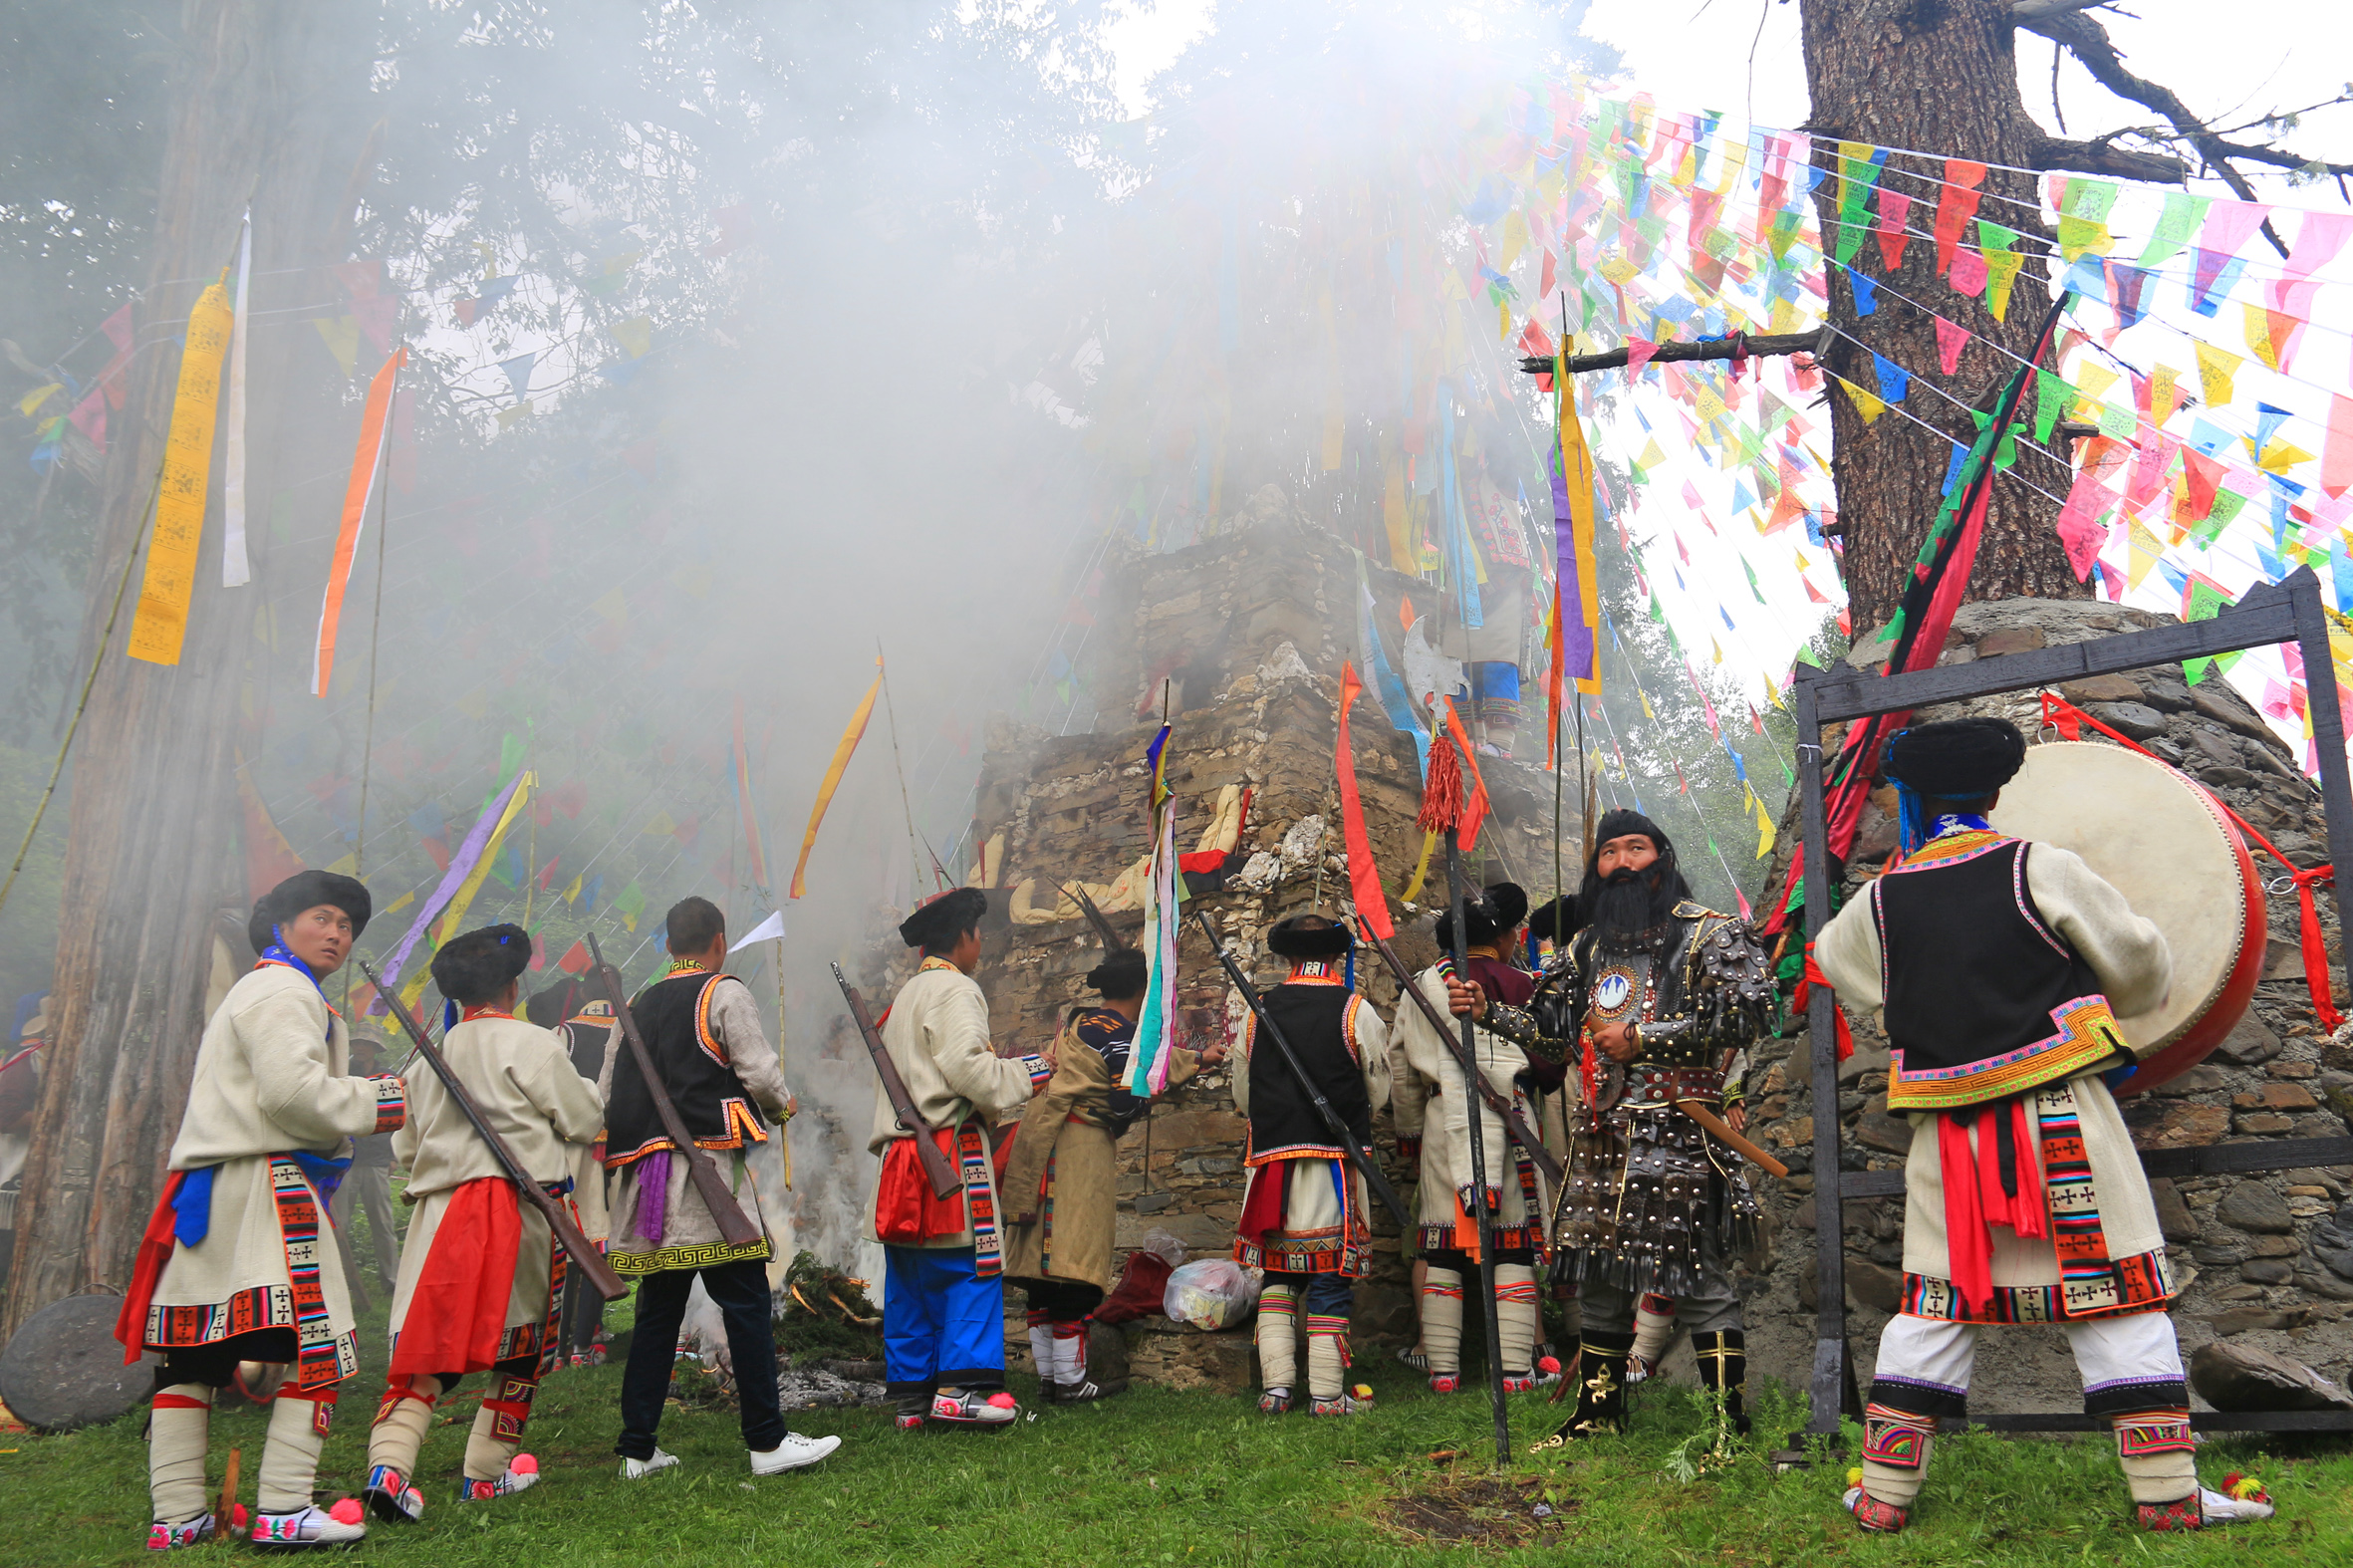 羌族传统“转山会”祭祀庆典活动在茂县隆重举行